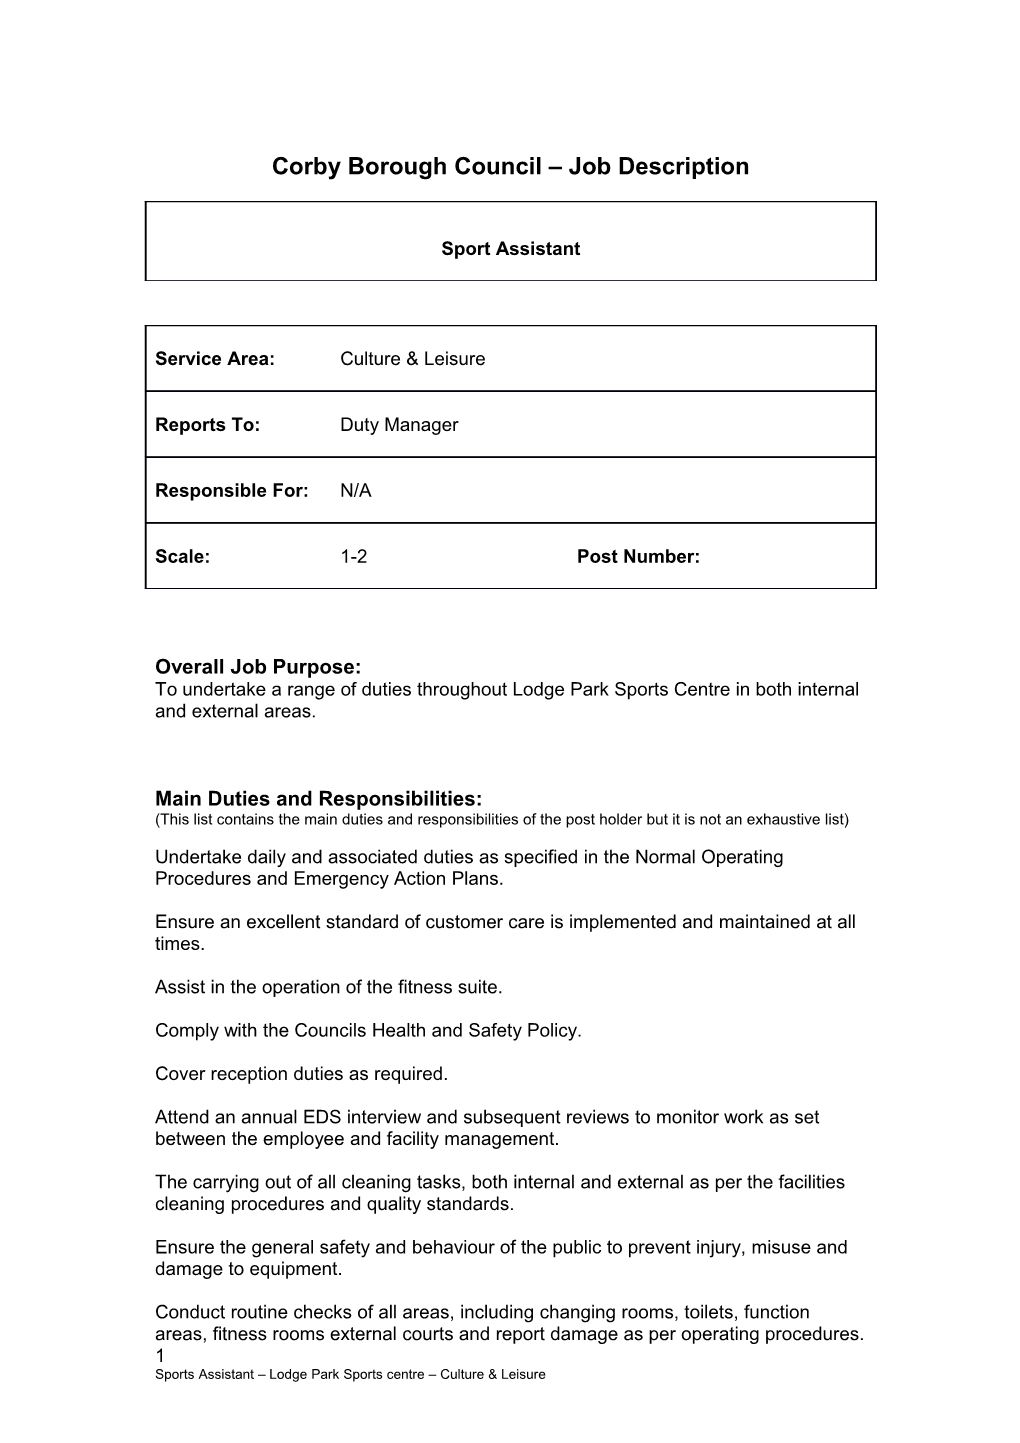 Corby Borough Council Job Description s1